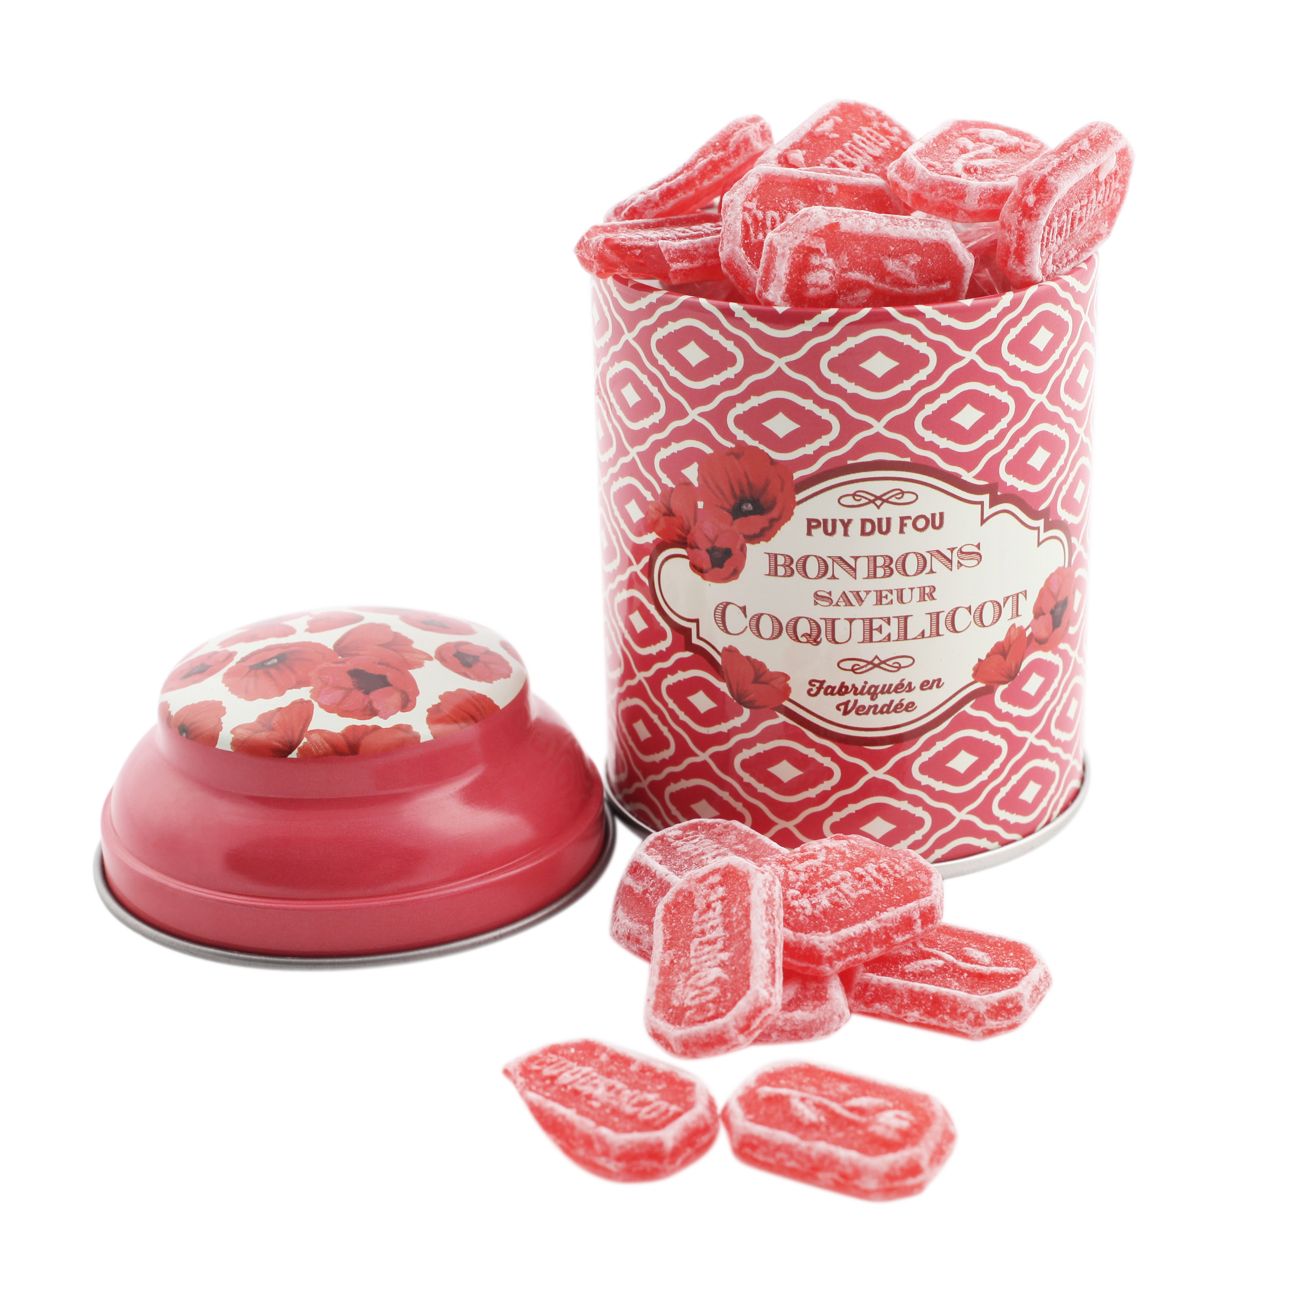 Boîte bonbons coquelicots Bourg 1900 - Boutique Puy du Fou